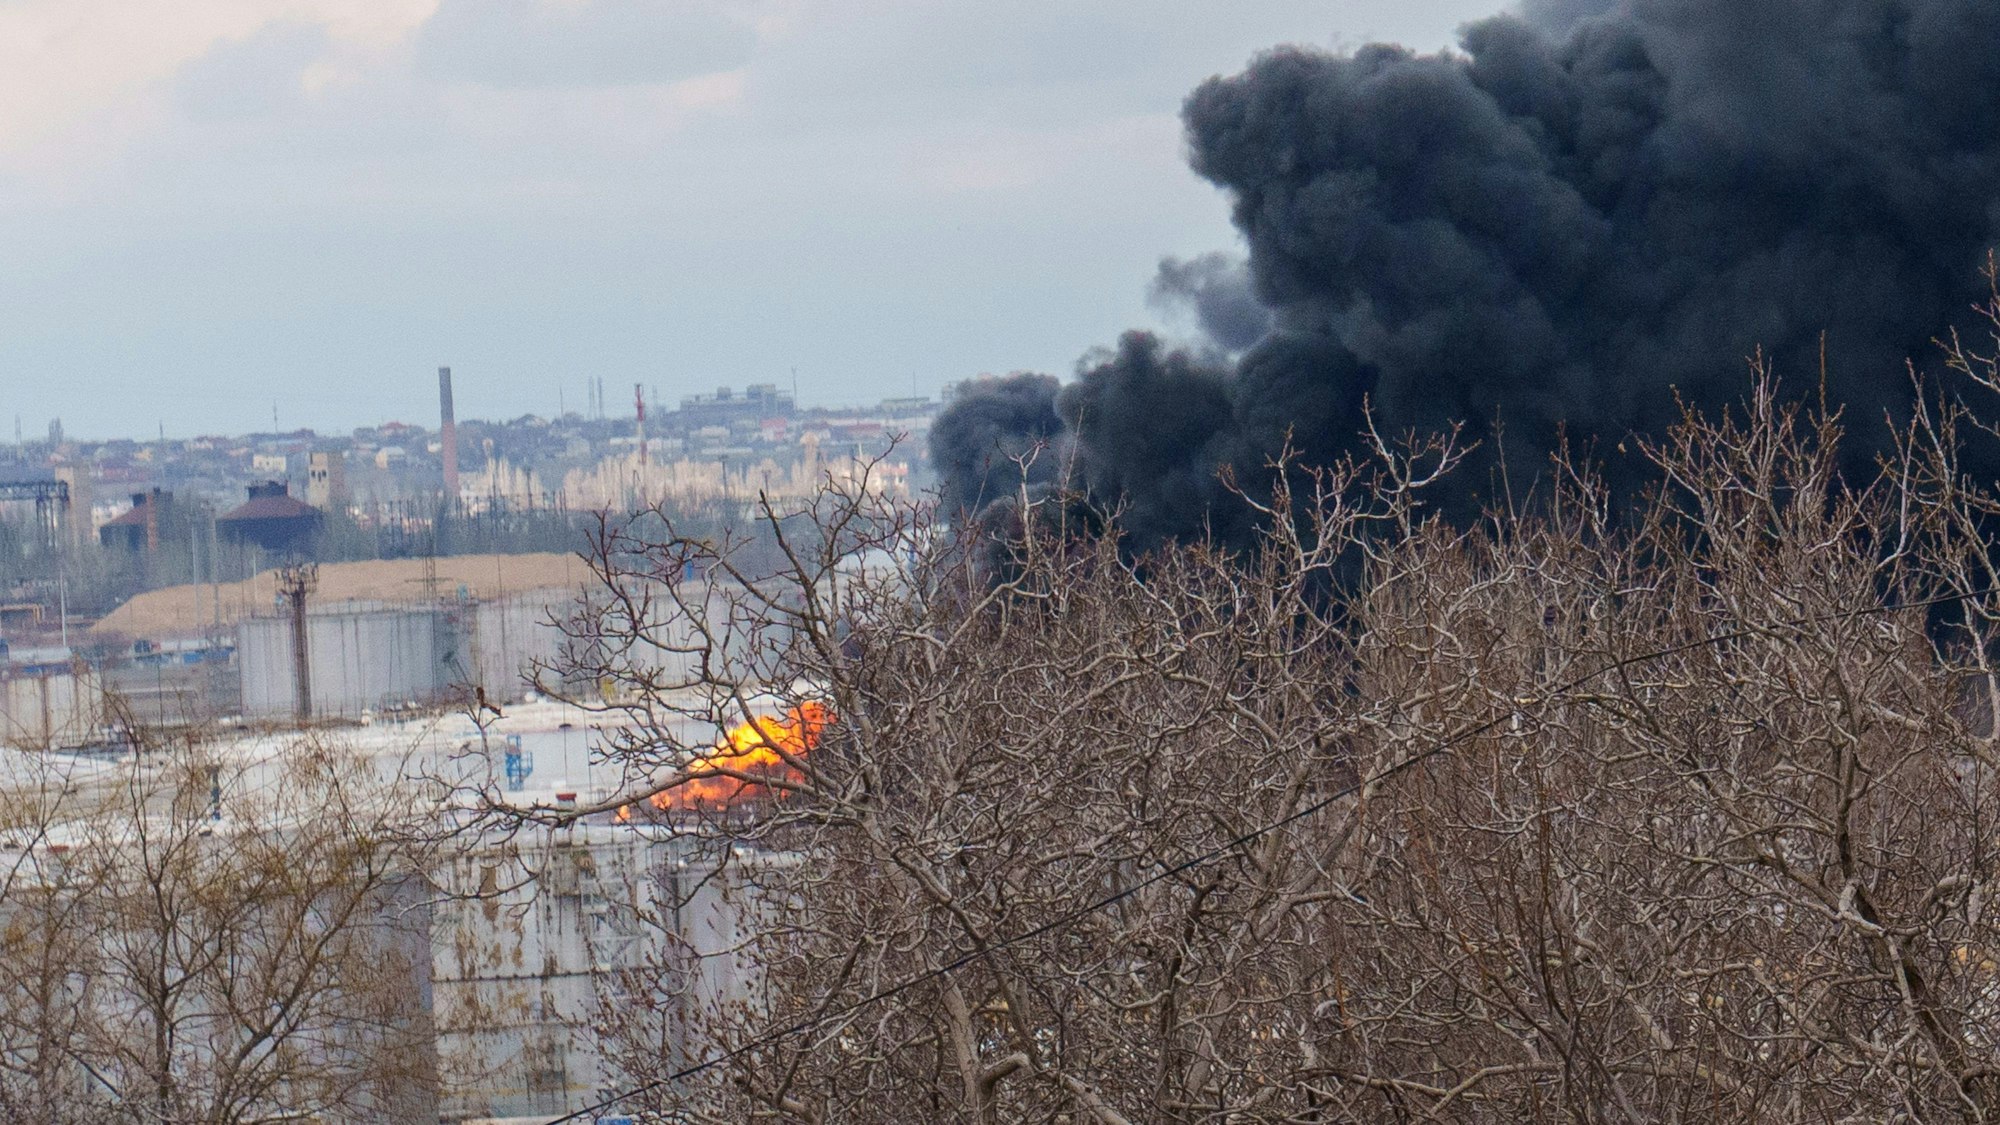 Schwarzer Rauch über einem Treibstoffdepot in der ukrainischen Stadt Odessa. In der Nacht auf Montag hat Russland erneut ukrainische Häfen angegriffen. Laut Angaben aus Kiew landete dabei eine russische Drohne im Nato-Land Rumänien, Bukarest dementiert den Bericht. (Archivbild)